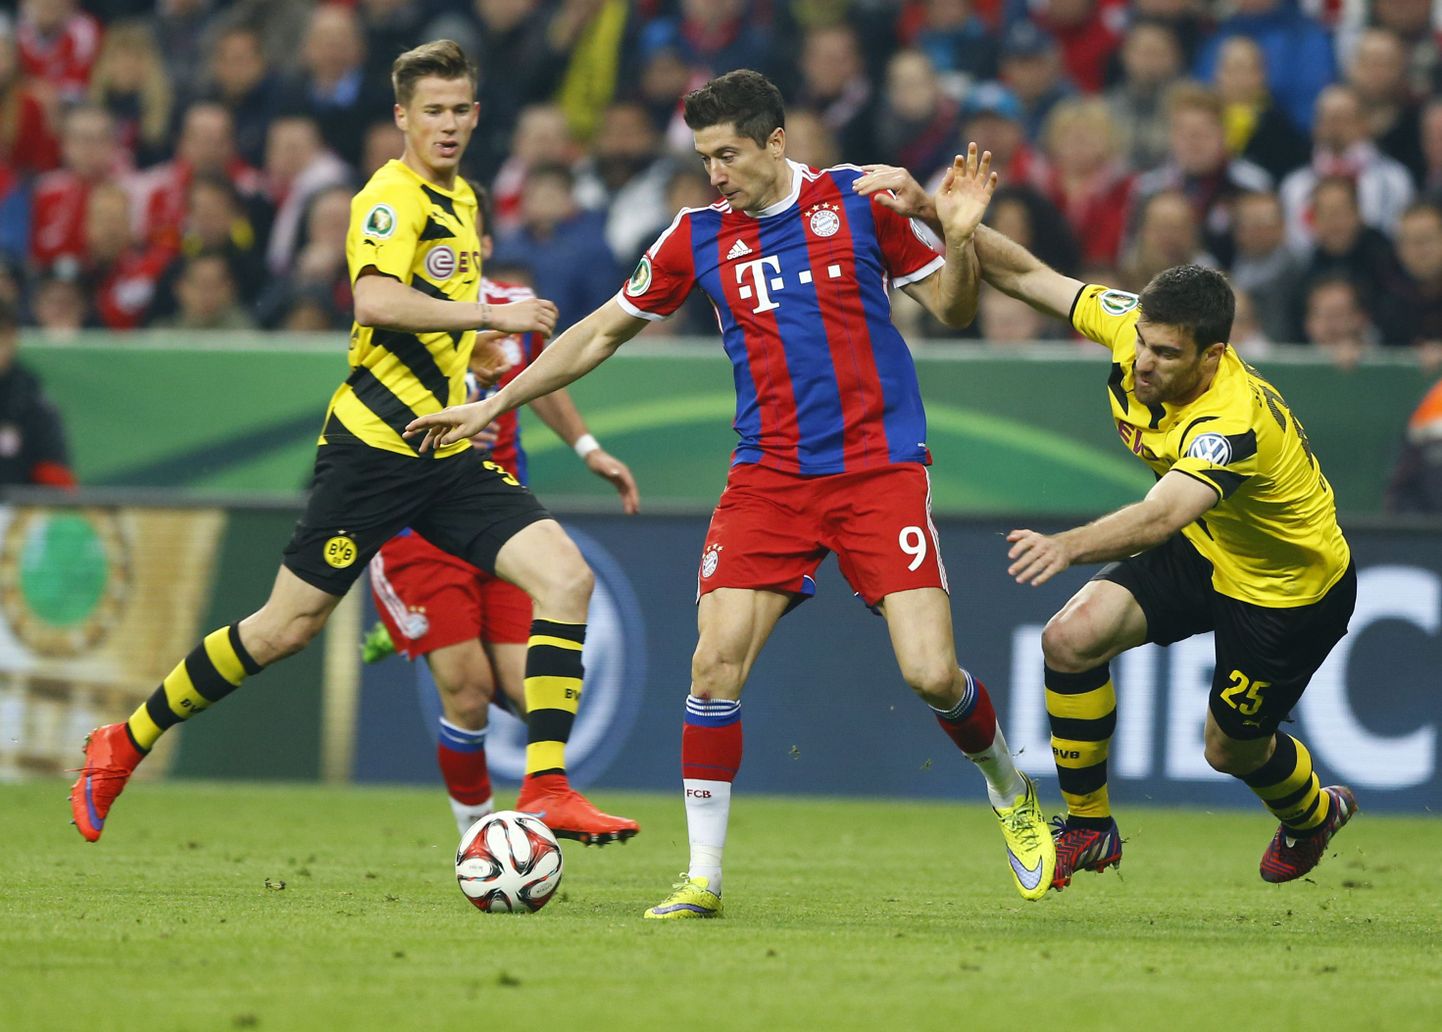 Kuidas suudab Dortmundi Borussia pidurdada meeletus hoos olevat Bayerni ründajat Robert Lewandowskit?